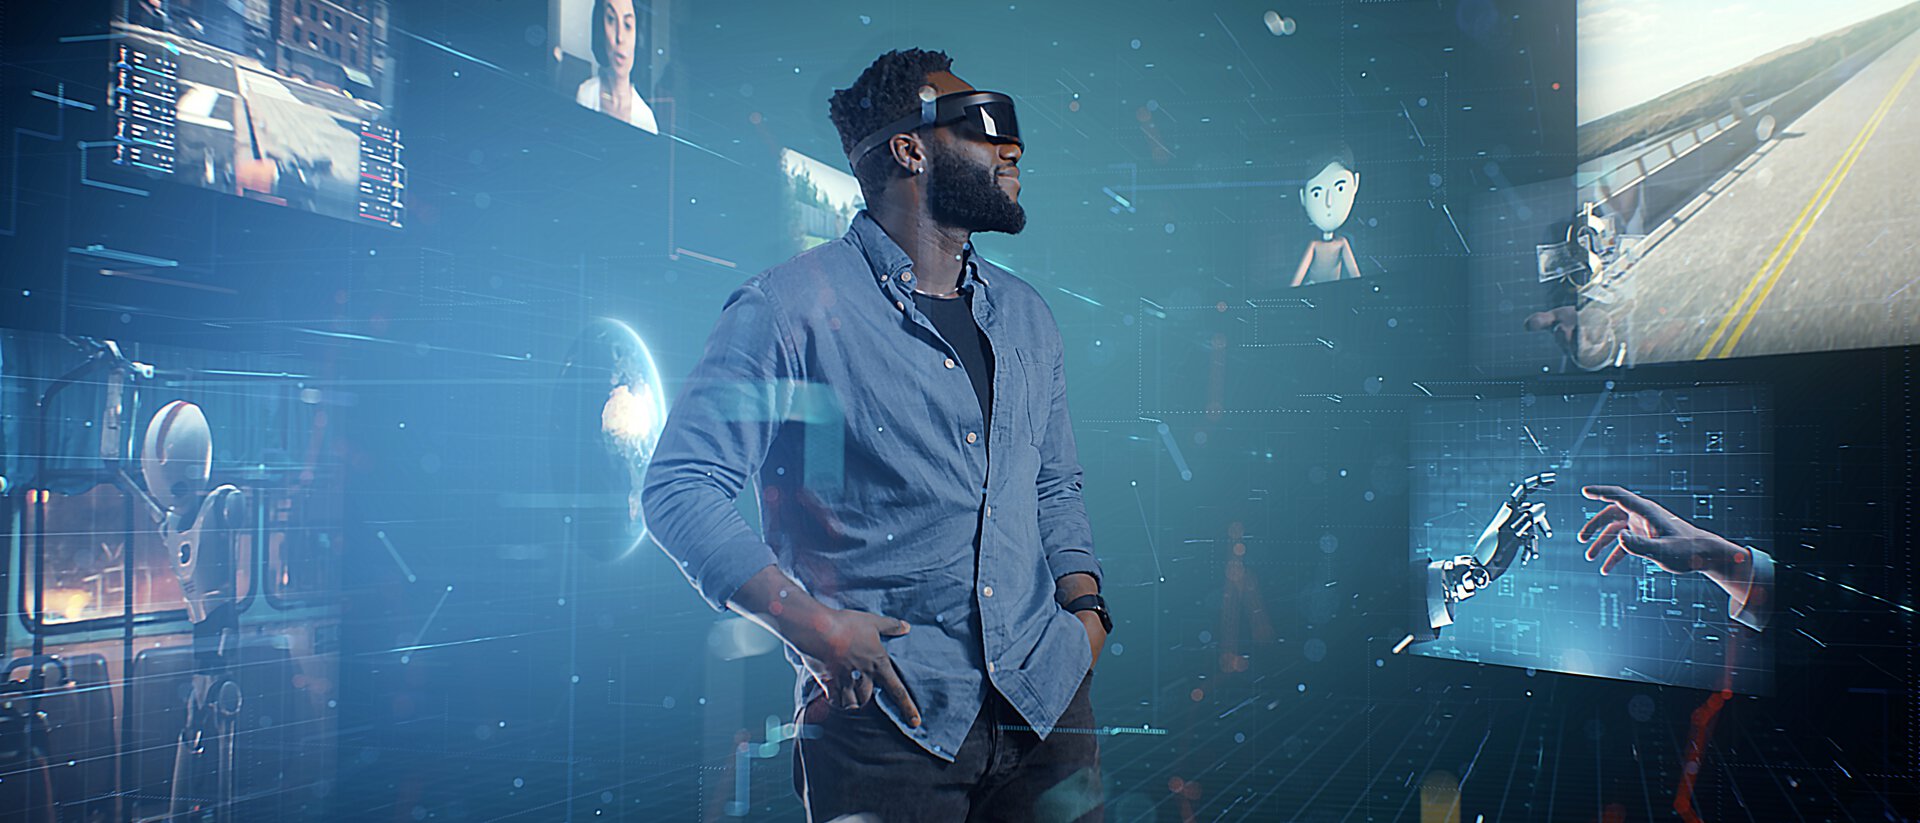 Mann mit Virtual Reality Brille, Apple Vision Pro, steht in einem Raum mit viel Blau, um Ihn herum sind Bilder eingeblendet, die er sieht, eine Menschliche Hand und eine Roboterhand, die sich am Finger berühren, eine Straße, die Bilder drücken Fortschrittlichkeit aus 